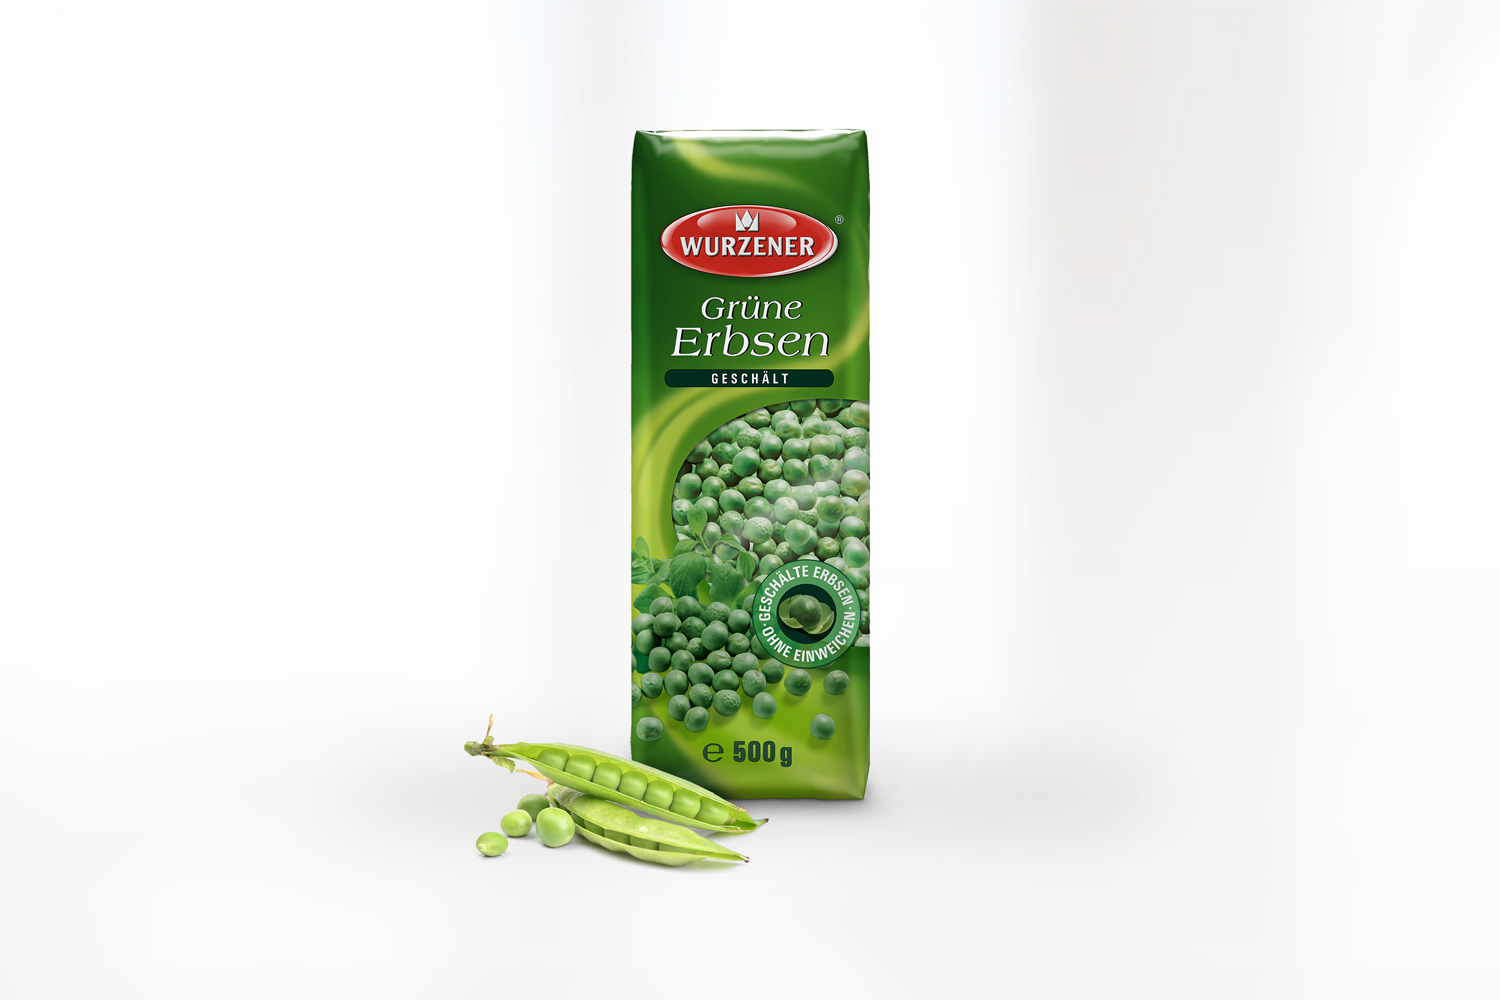 gruene-erbsen-geschaelt-wurzener-500g